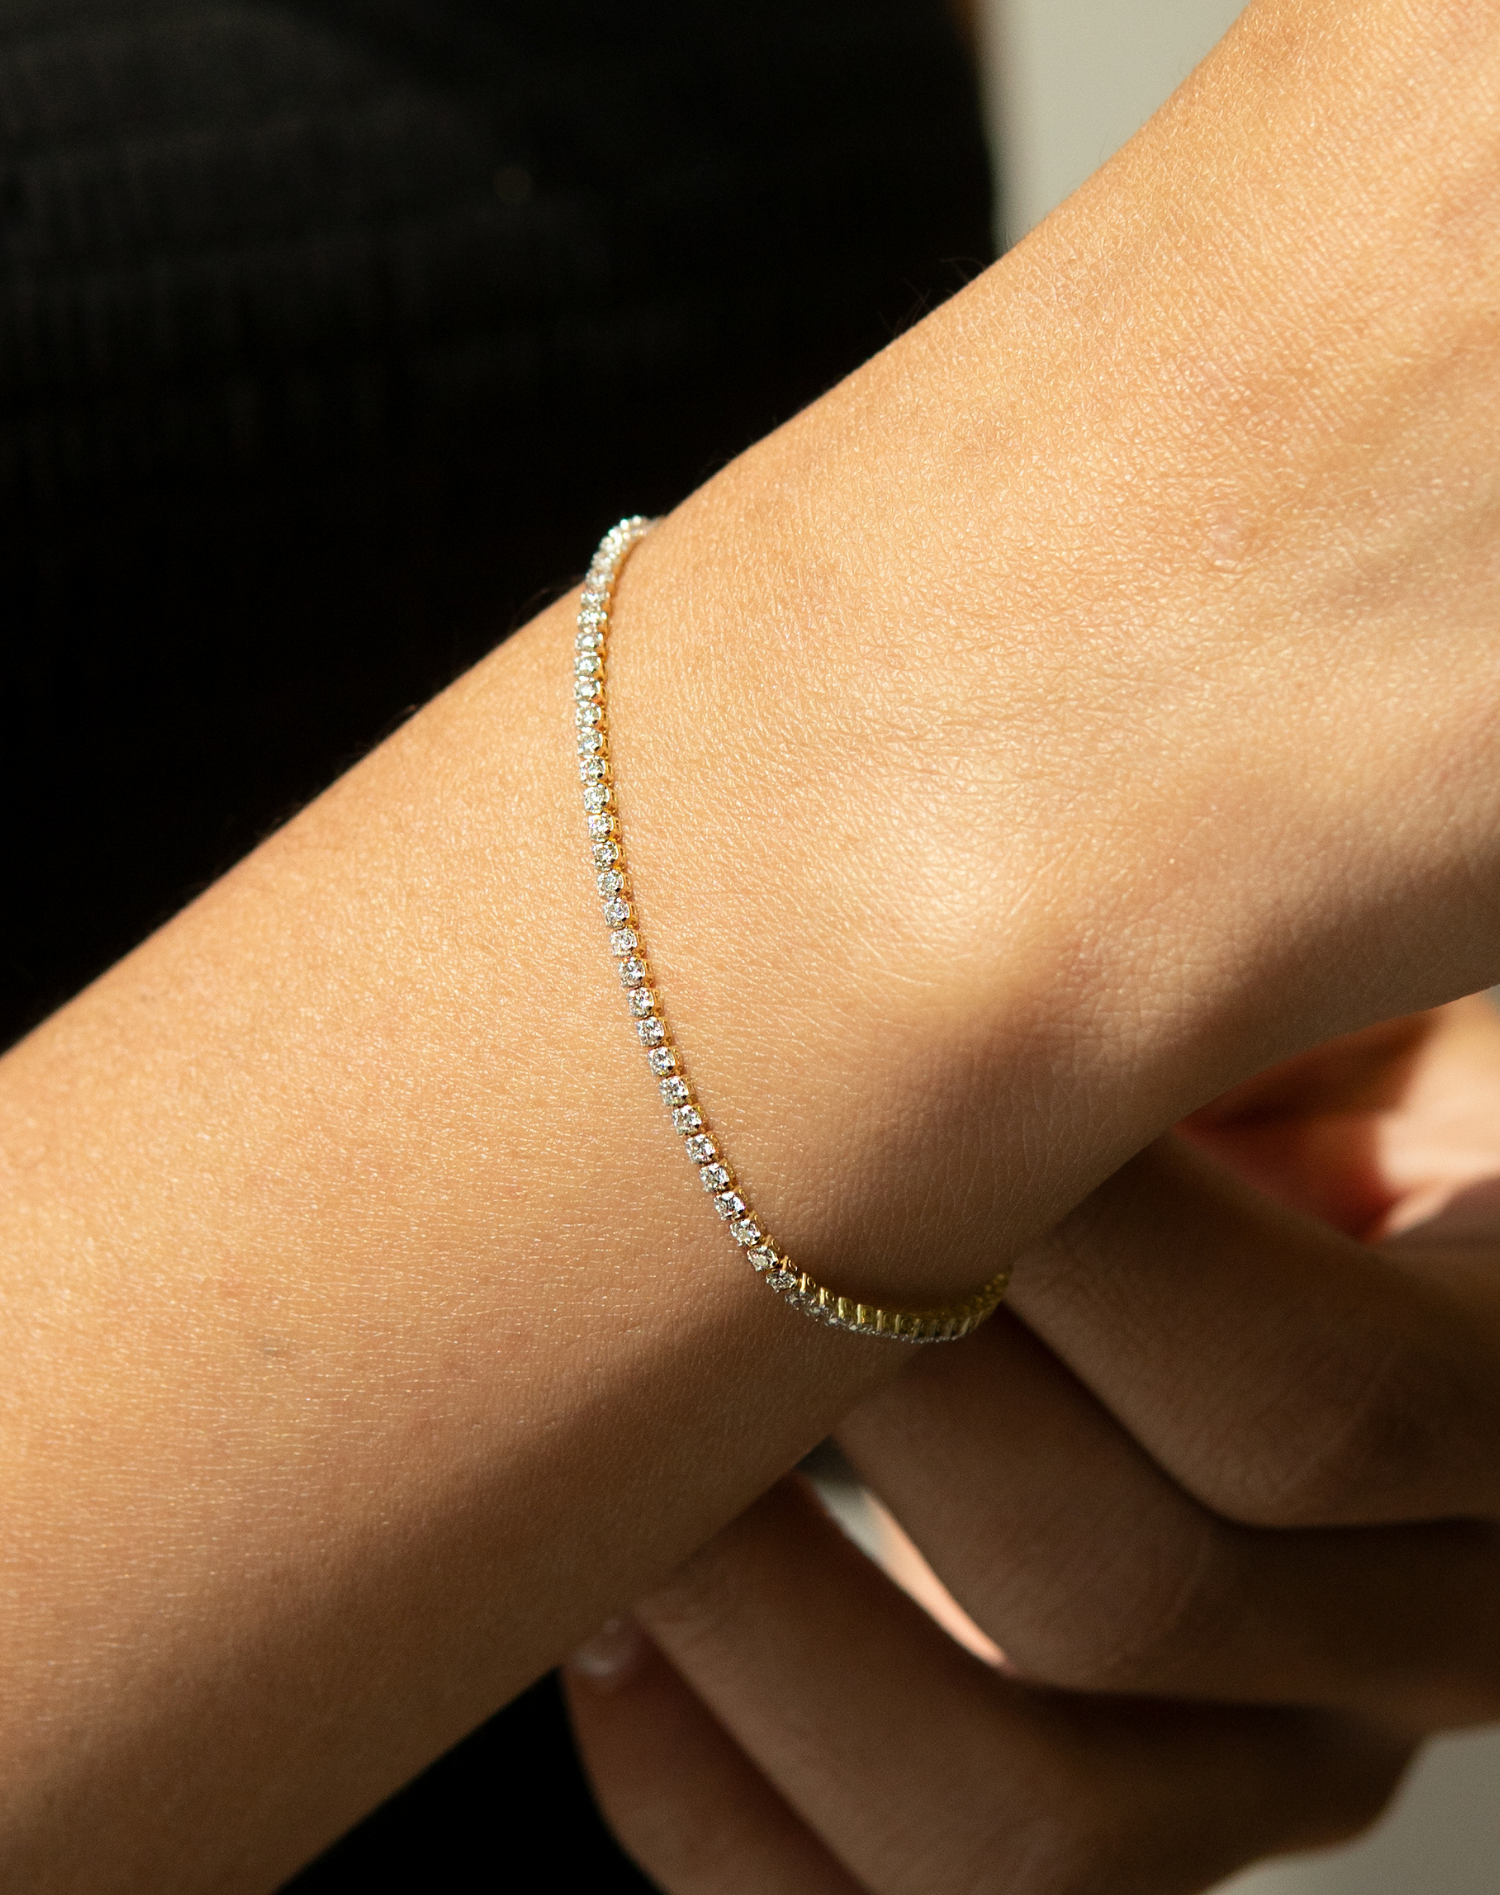 Bracelets for Women | Fashion Bracelets Jewelry Online Shopping